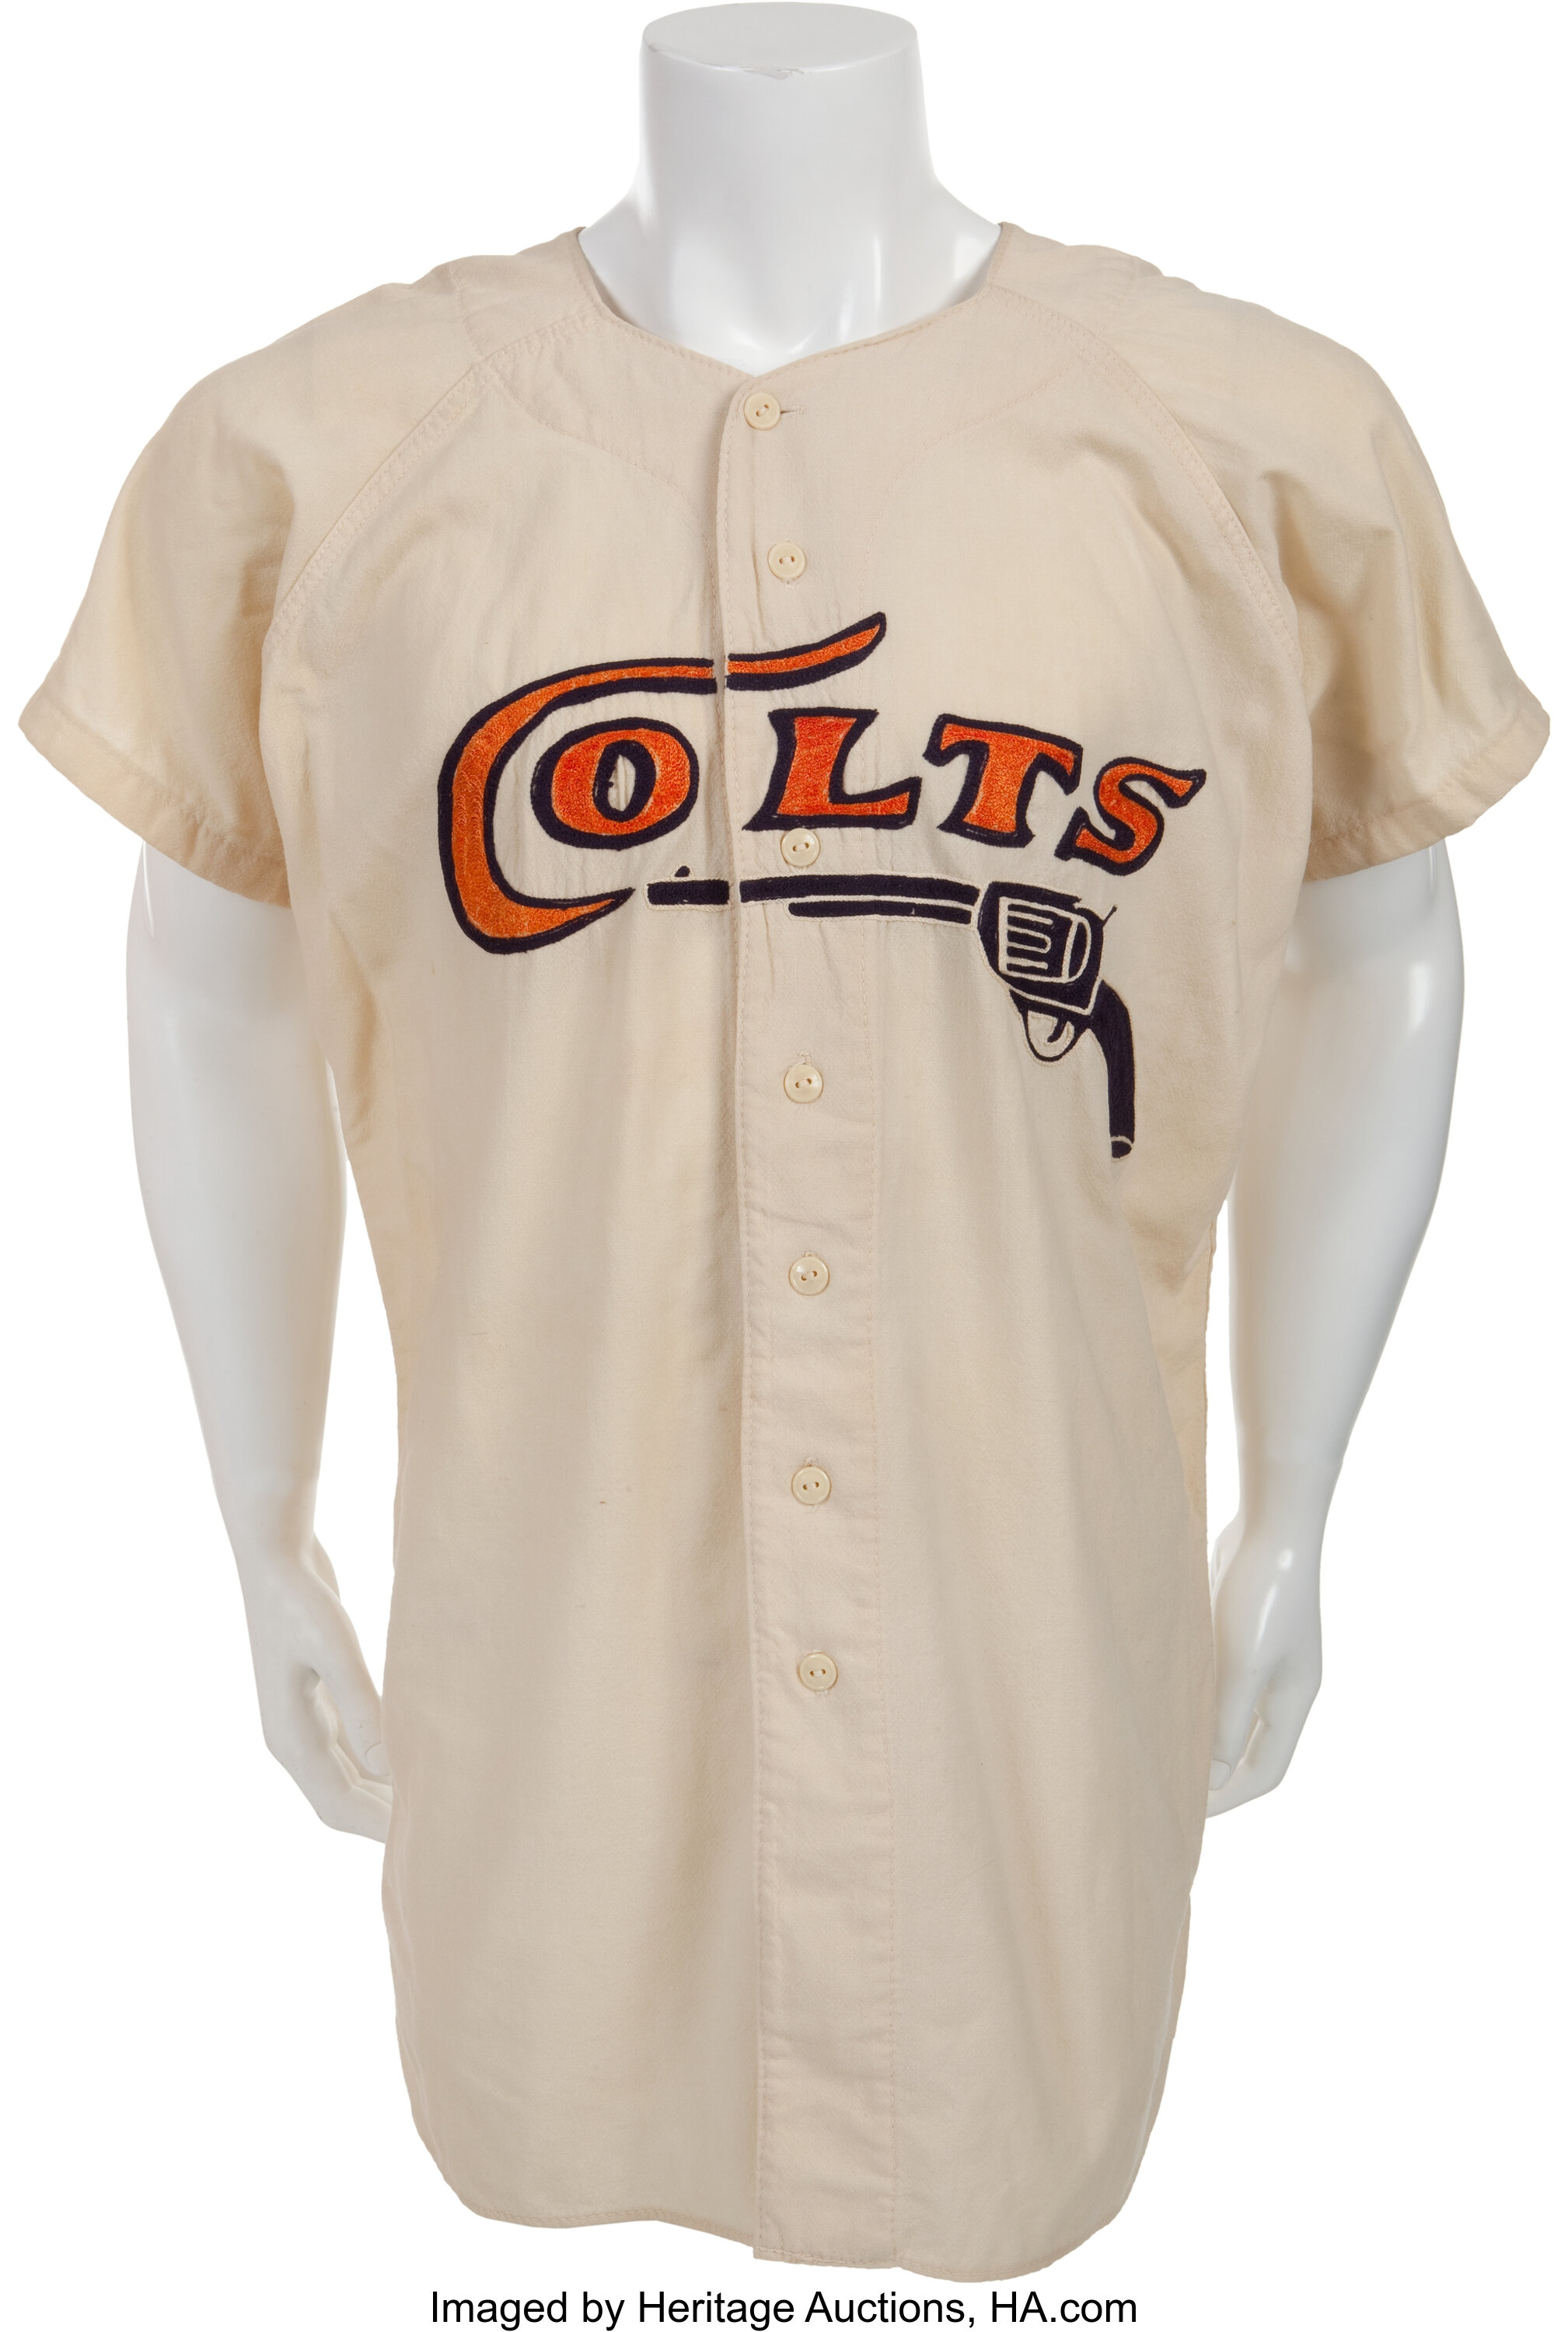 1962-64 Houston Colt .45's Game Worn Jersey. Fantastic vintage, Lot #64125